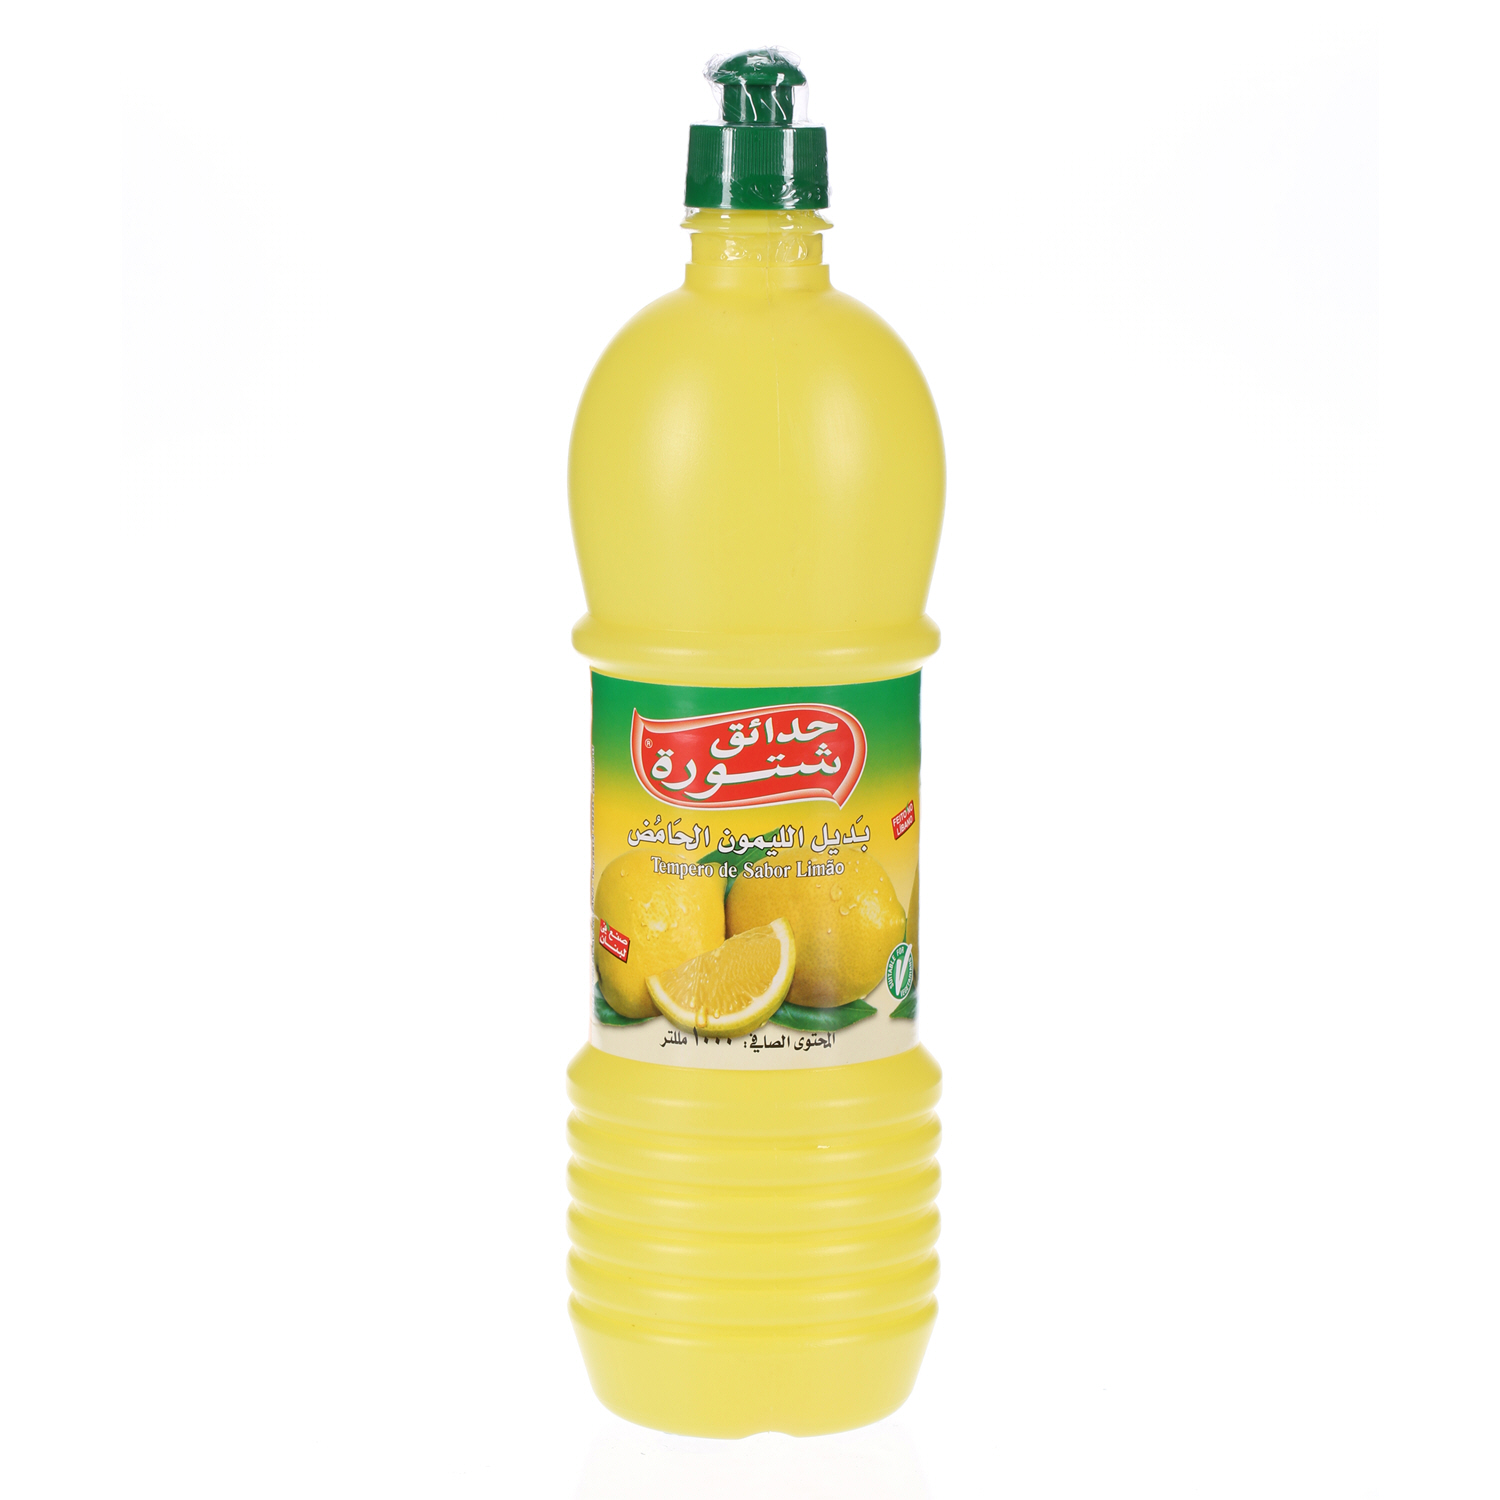 Chtoura Garden Lemon Flovour Seasoning 1 L